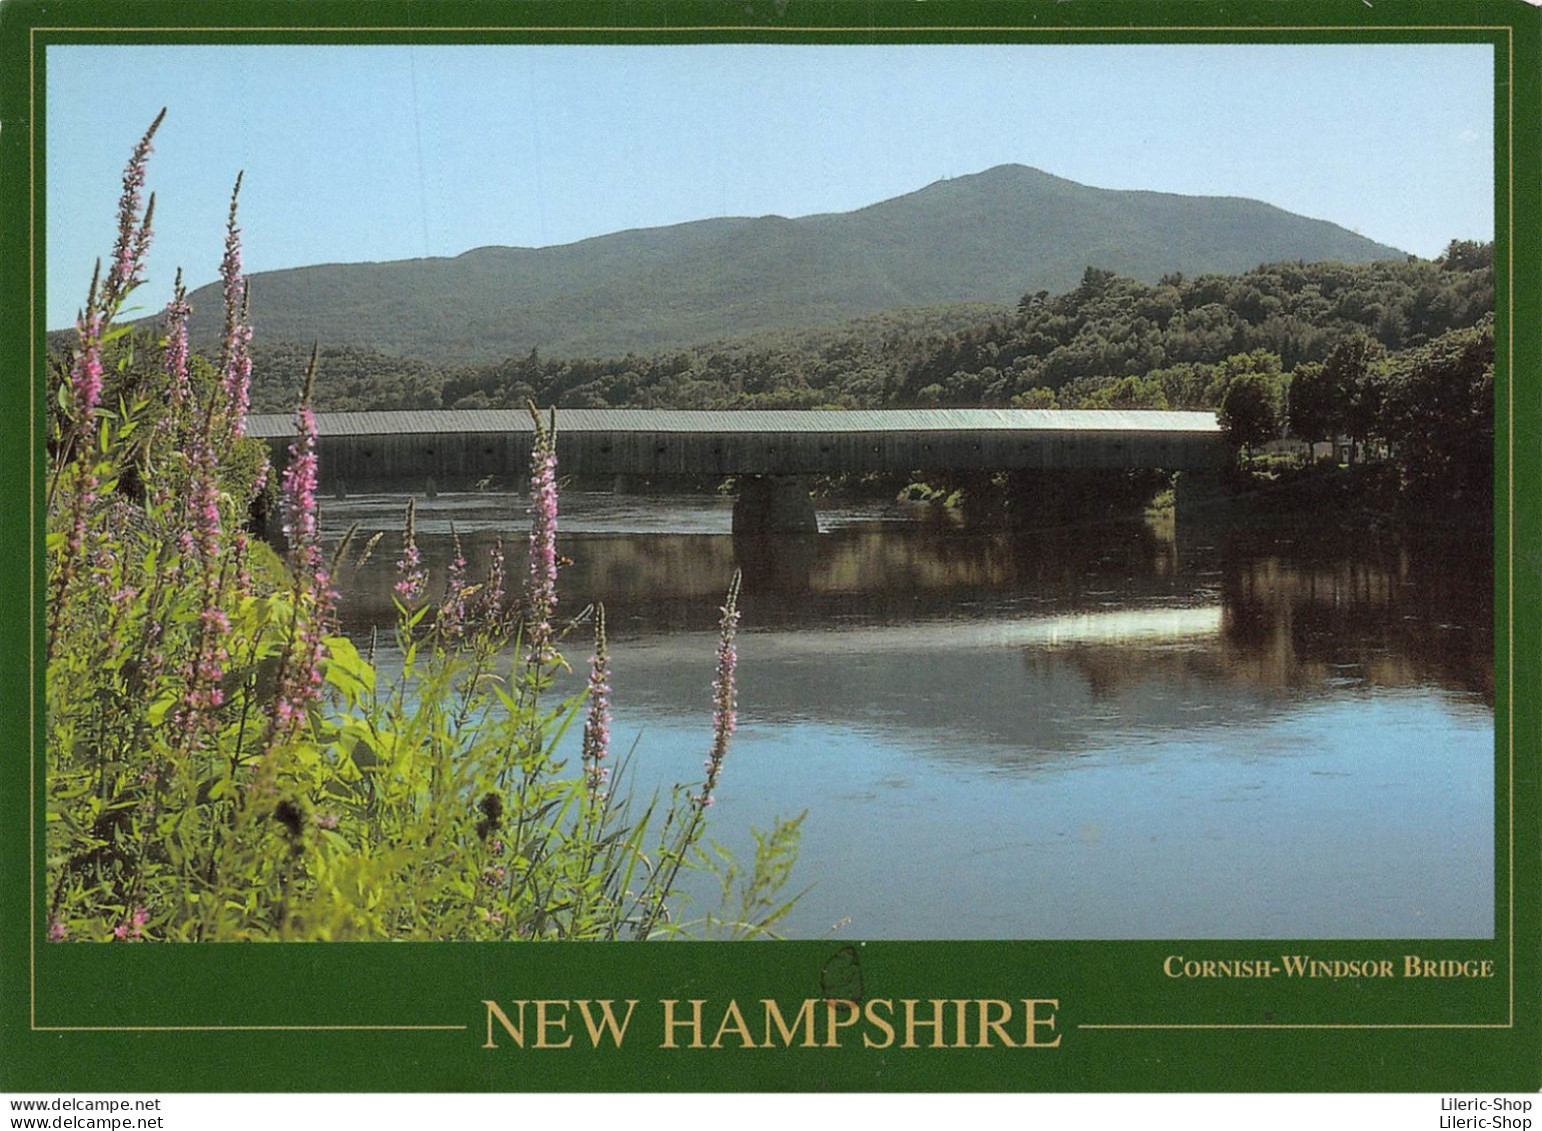 USA - Windsor - Vermont-Cornish - Lot de 18 cartes postales modernes toutes différentes